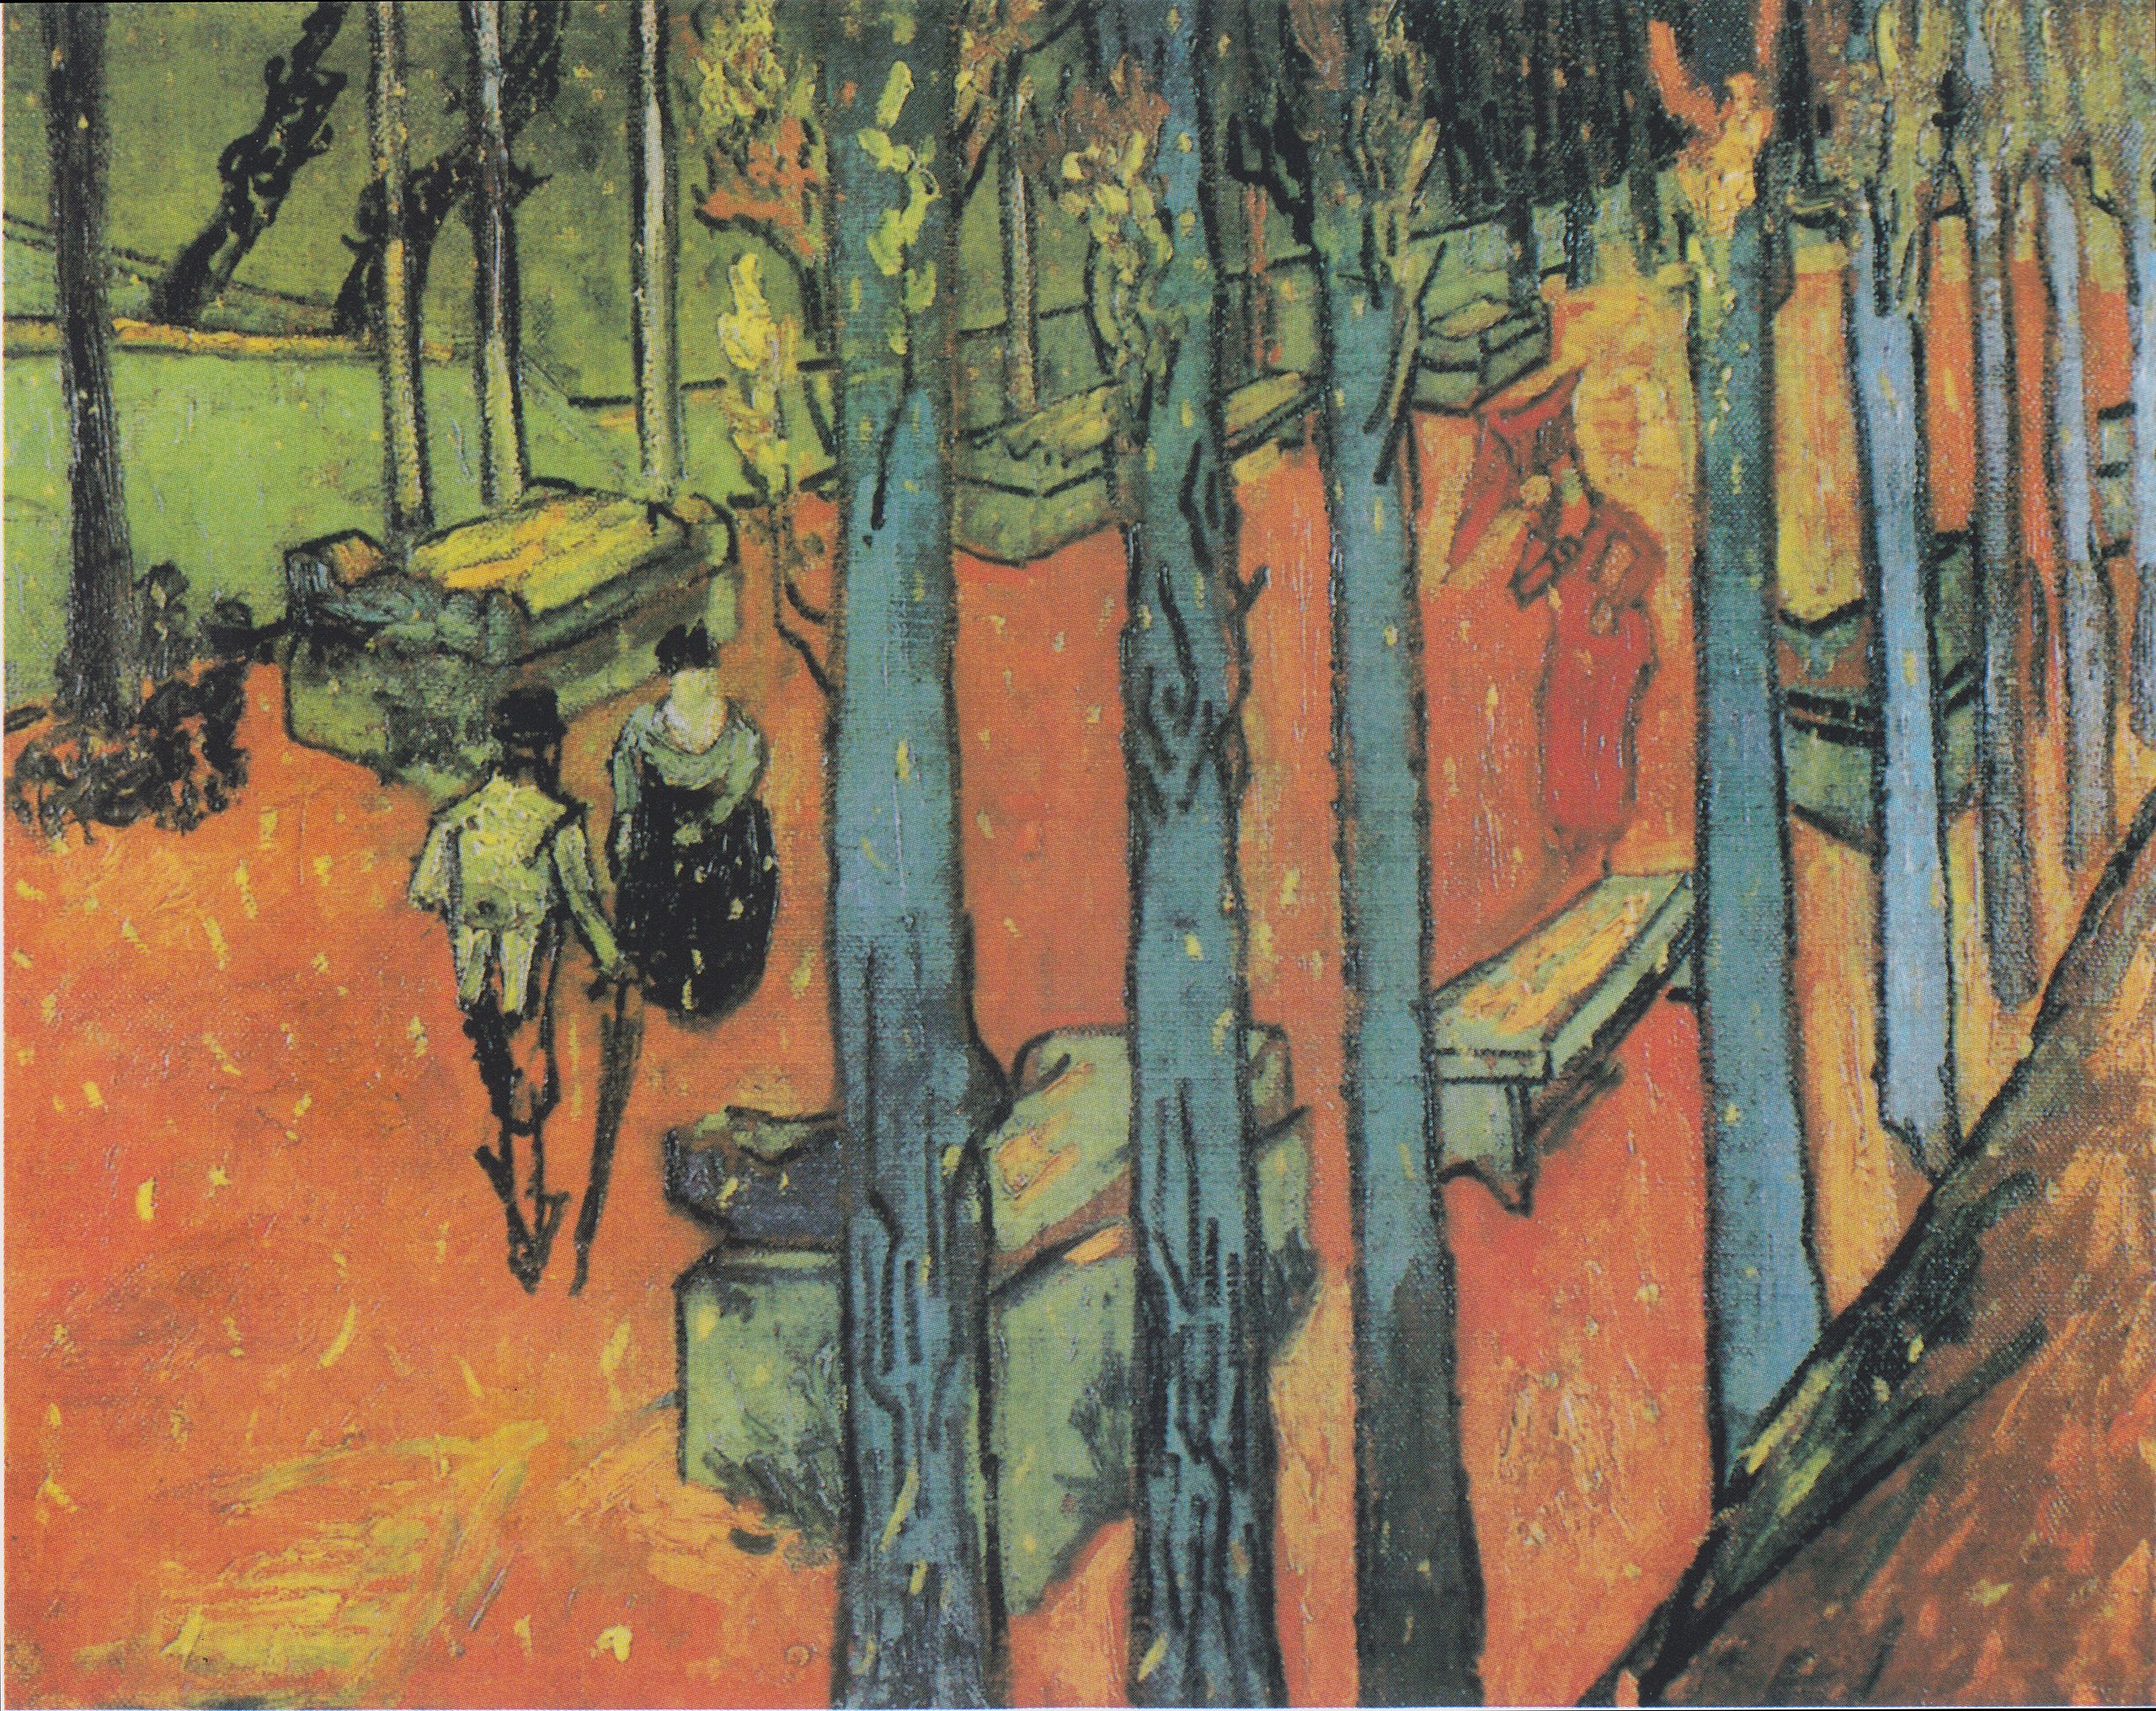 Vallende bladeren (Les Alyscamps) by Vincent Van Gogh - 1888 - 72,8 x 91,9 cm Kröller-Müller Museum